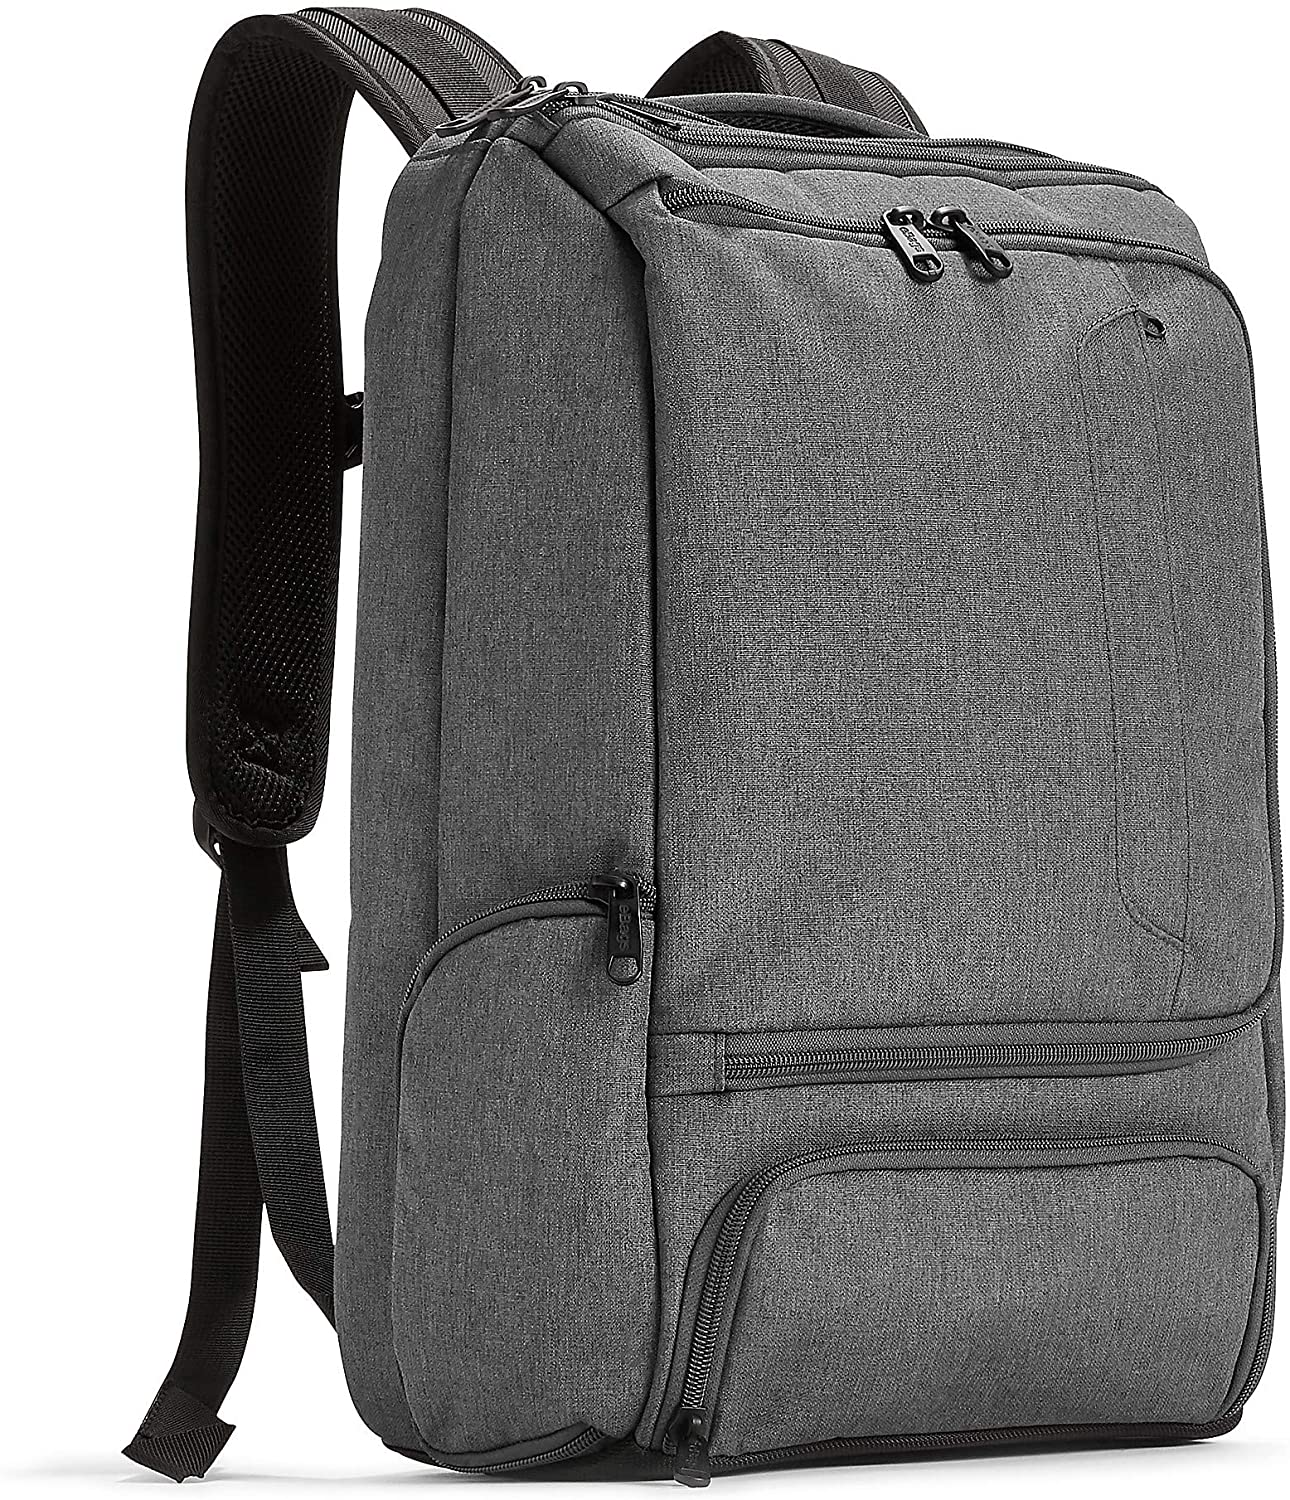 ebags Pro slim laptops backpack